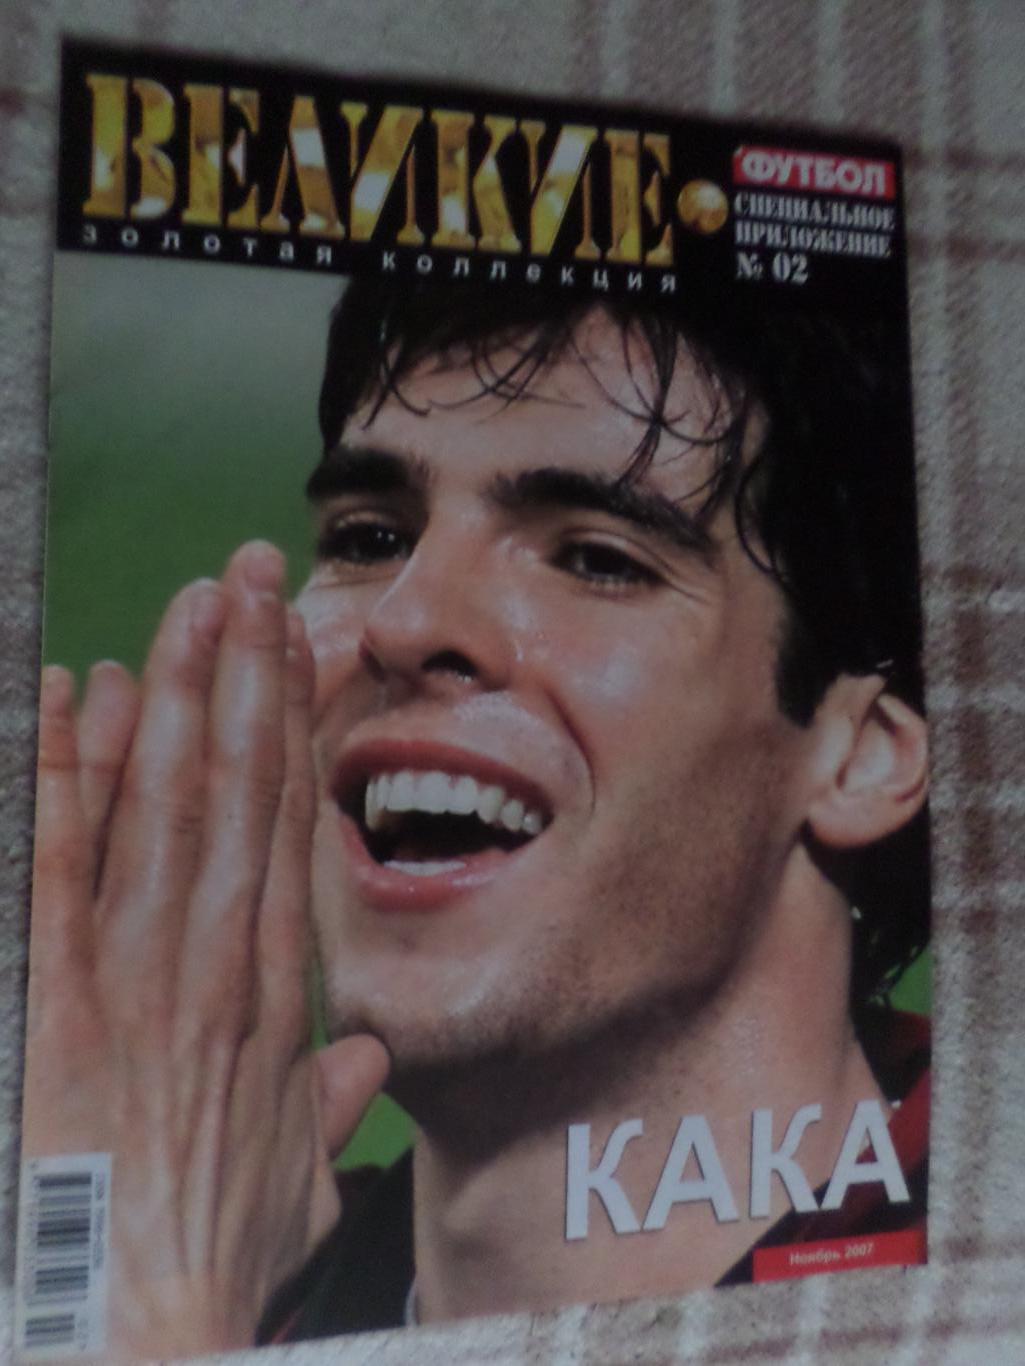 Еженедельник Футбол (Киев) спецвыпуск Великие игроки № 2 2007 г Кака, Руни